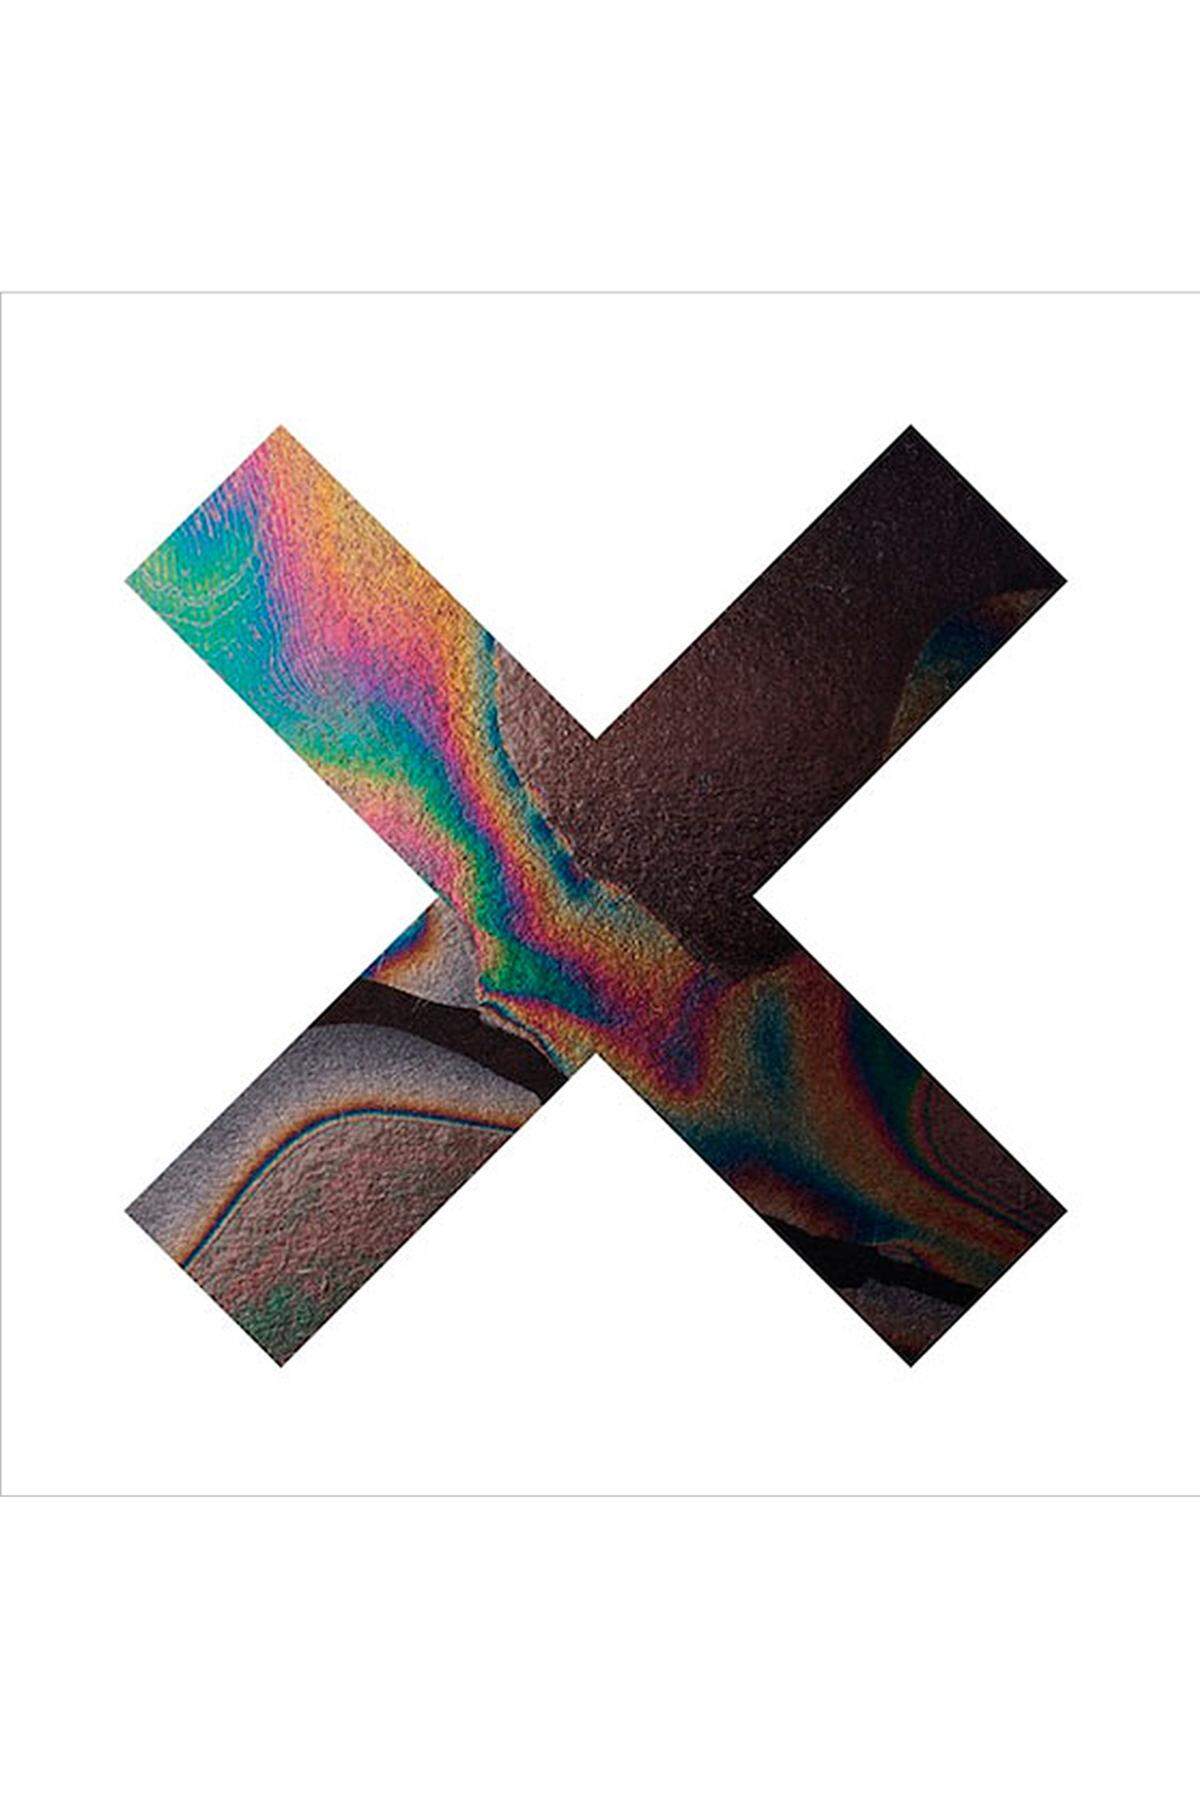 Das zweite Album der Briten The xx bot zwar wenig Veränderung zum ikonischen Debüt, bloß Verfeinerung und sanfte Variation. Ihr Minimalismus zwischen Indie, R’n’B und Elektronik überwältigte dennoch, ihr intimer, übernächtiger Sound blieb unerreicht.Link zur Kritik: The xx „Coexist“.Hörprobe: 